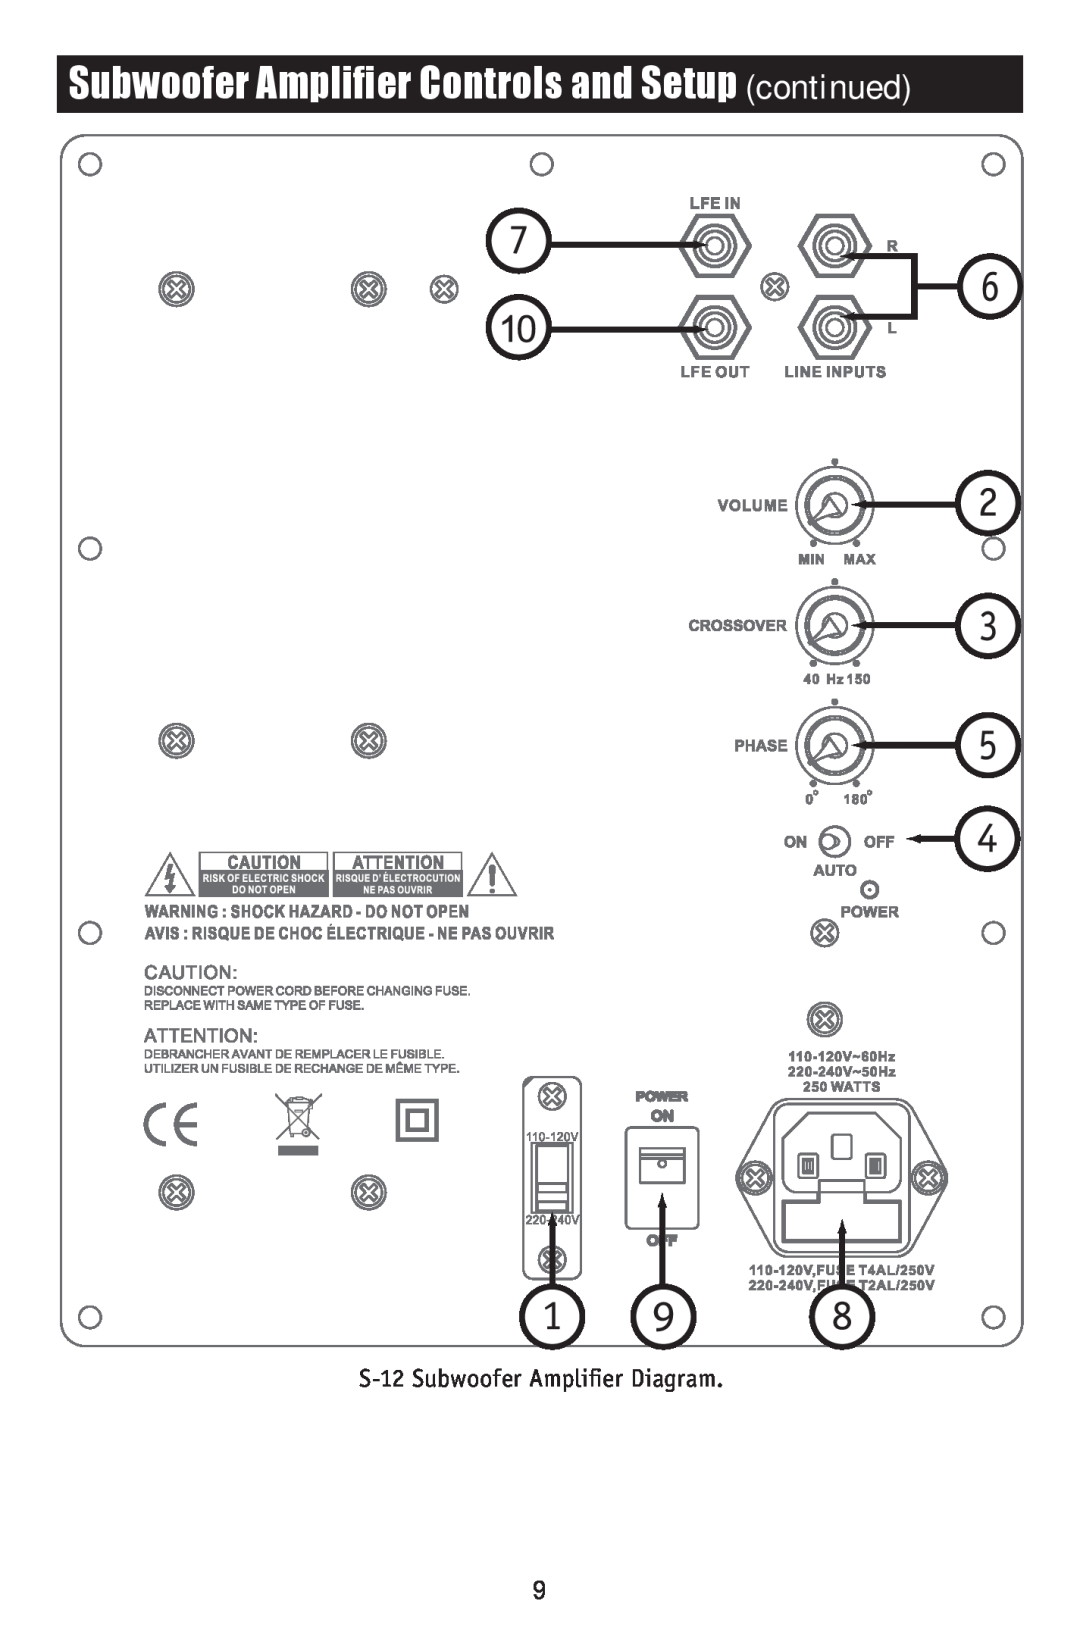 RBH Sound S-10 owner manual Subwoofer Amplifier Controls and Setup continued, S-12Subwoofer Amplifier Diagram 